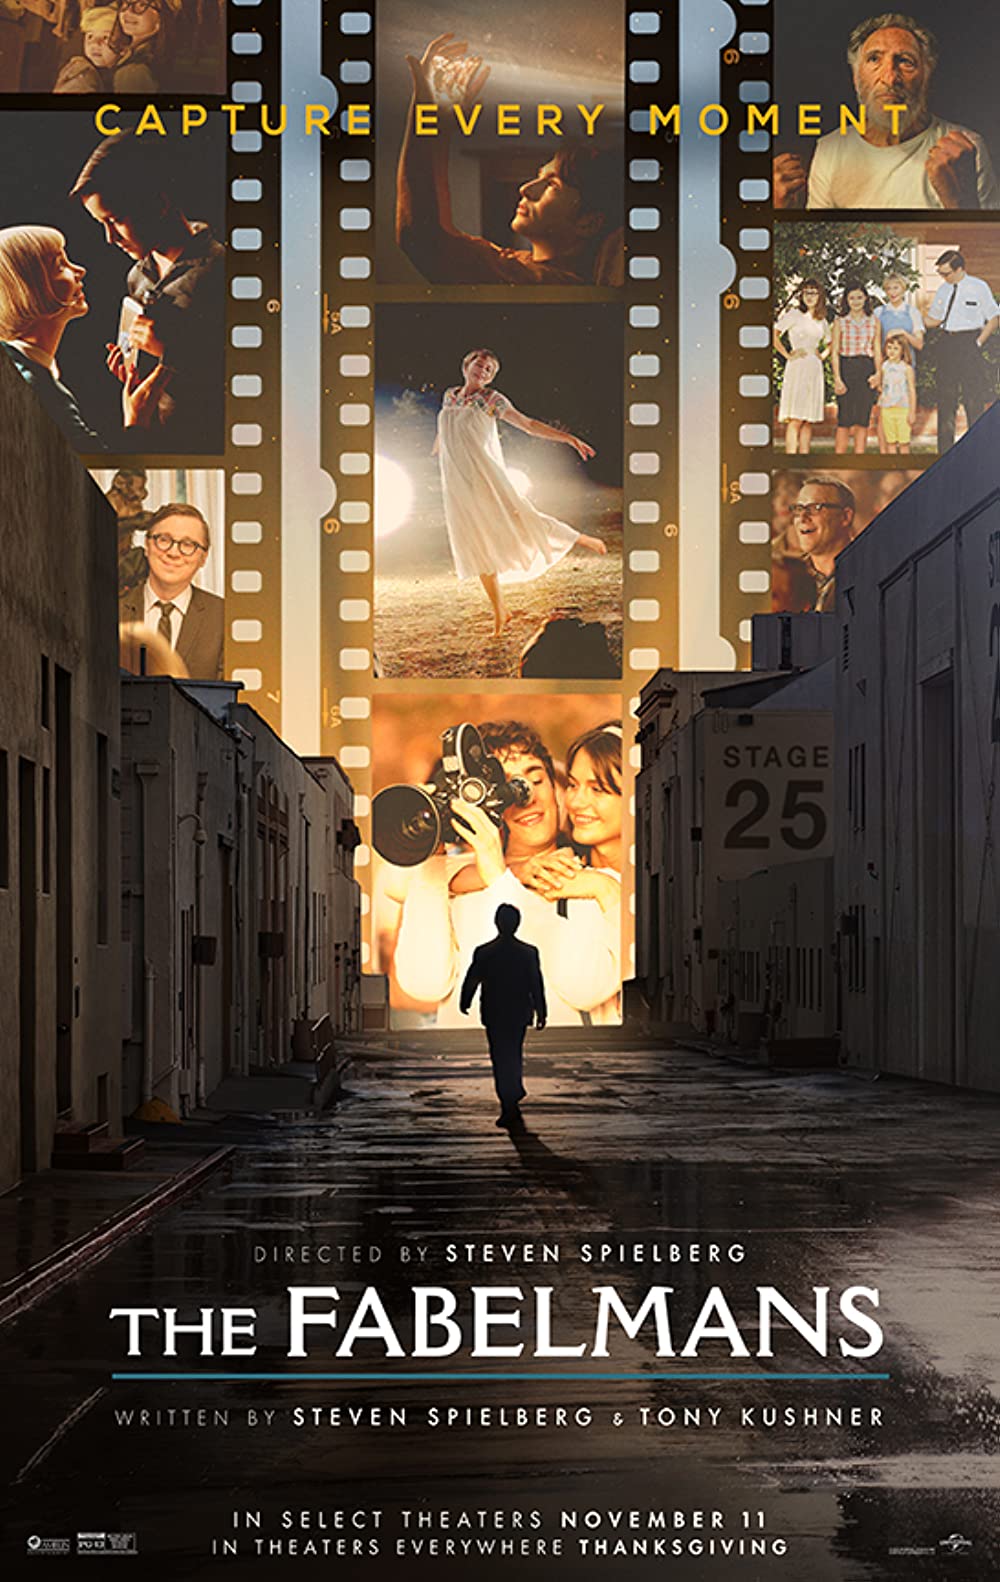 Film poster for Steven Spielberg